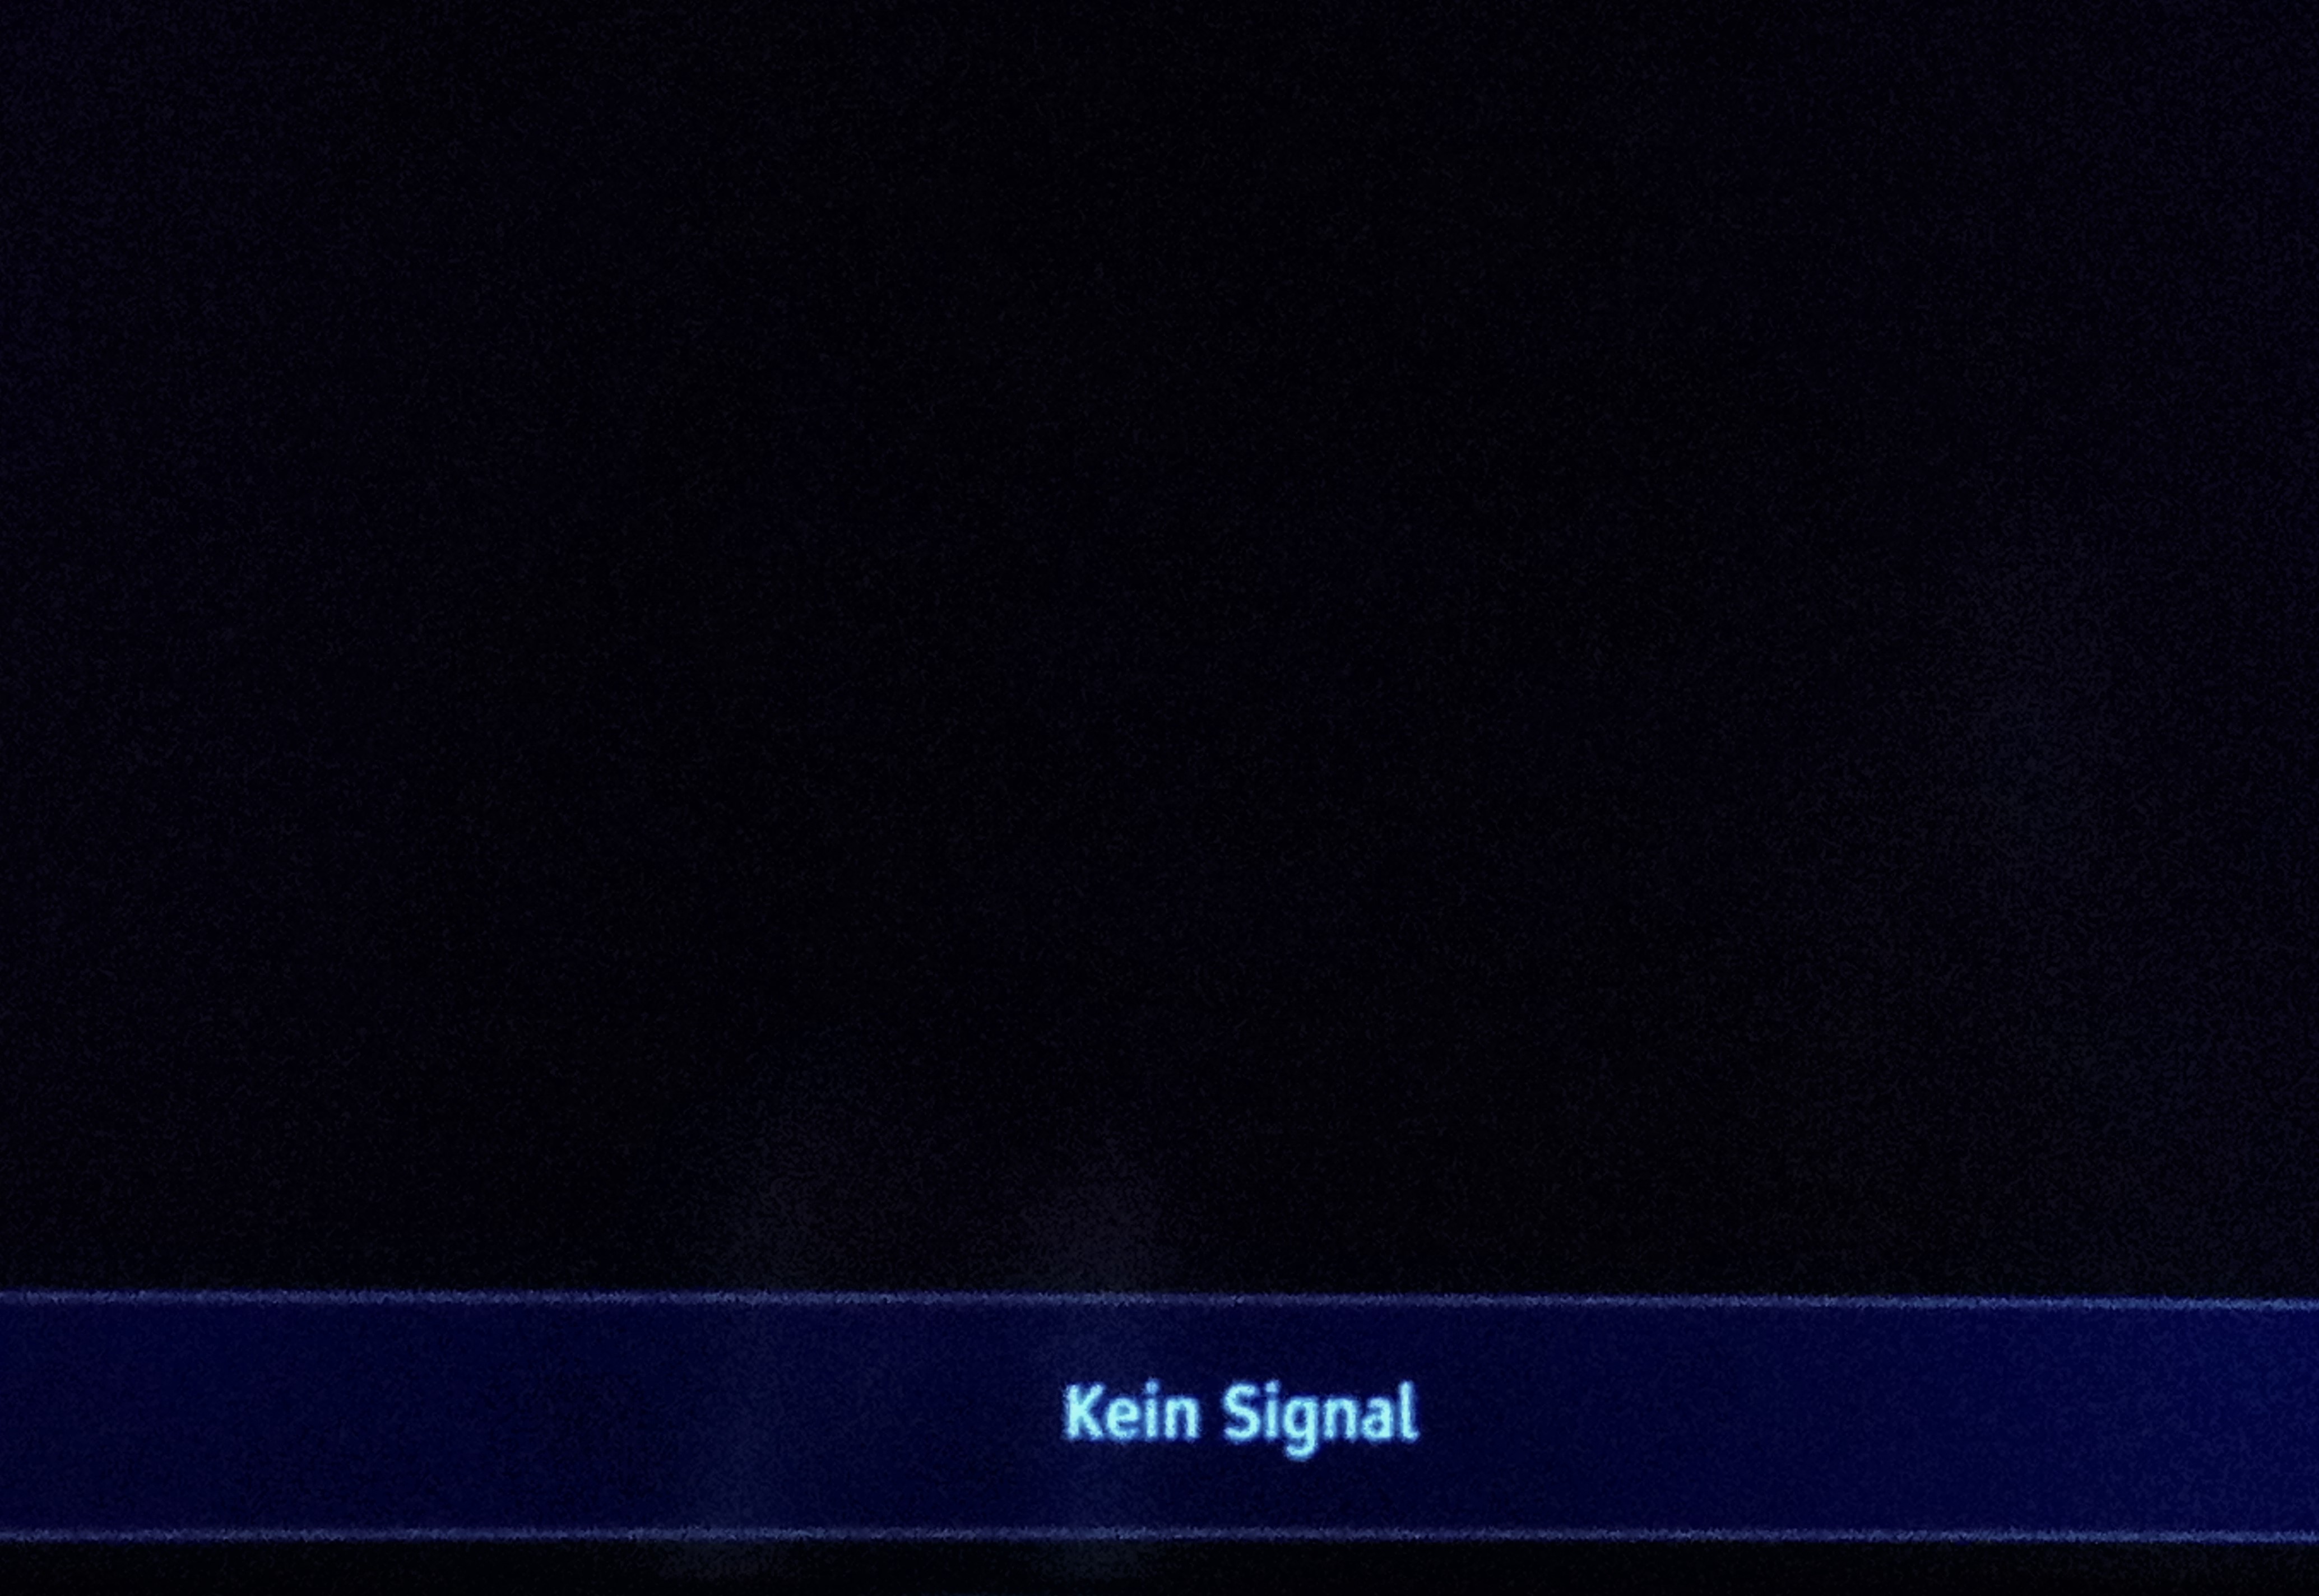 Fernsehen: Kein Signal - was tun? | heise online